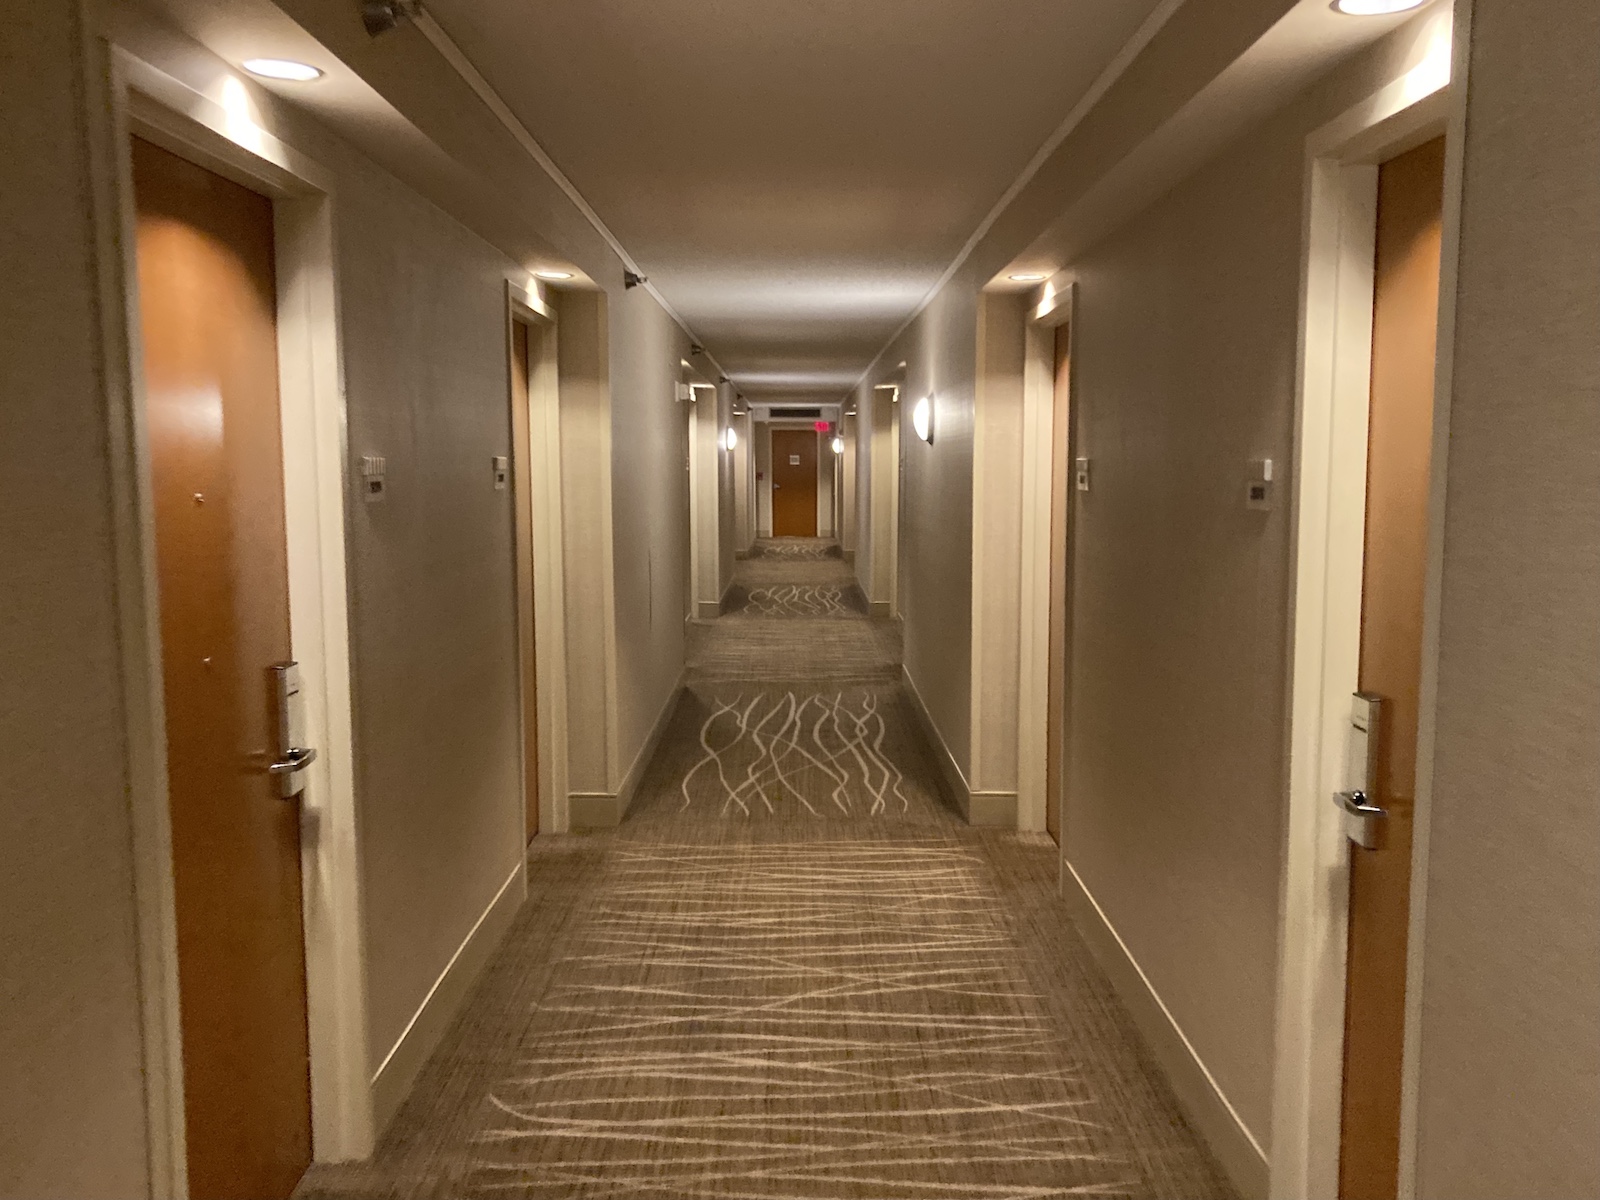 Hyatt Rosemont Review – Decent Hotel Near Chicago O’Hare